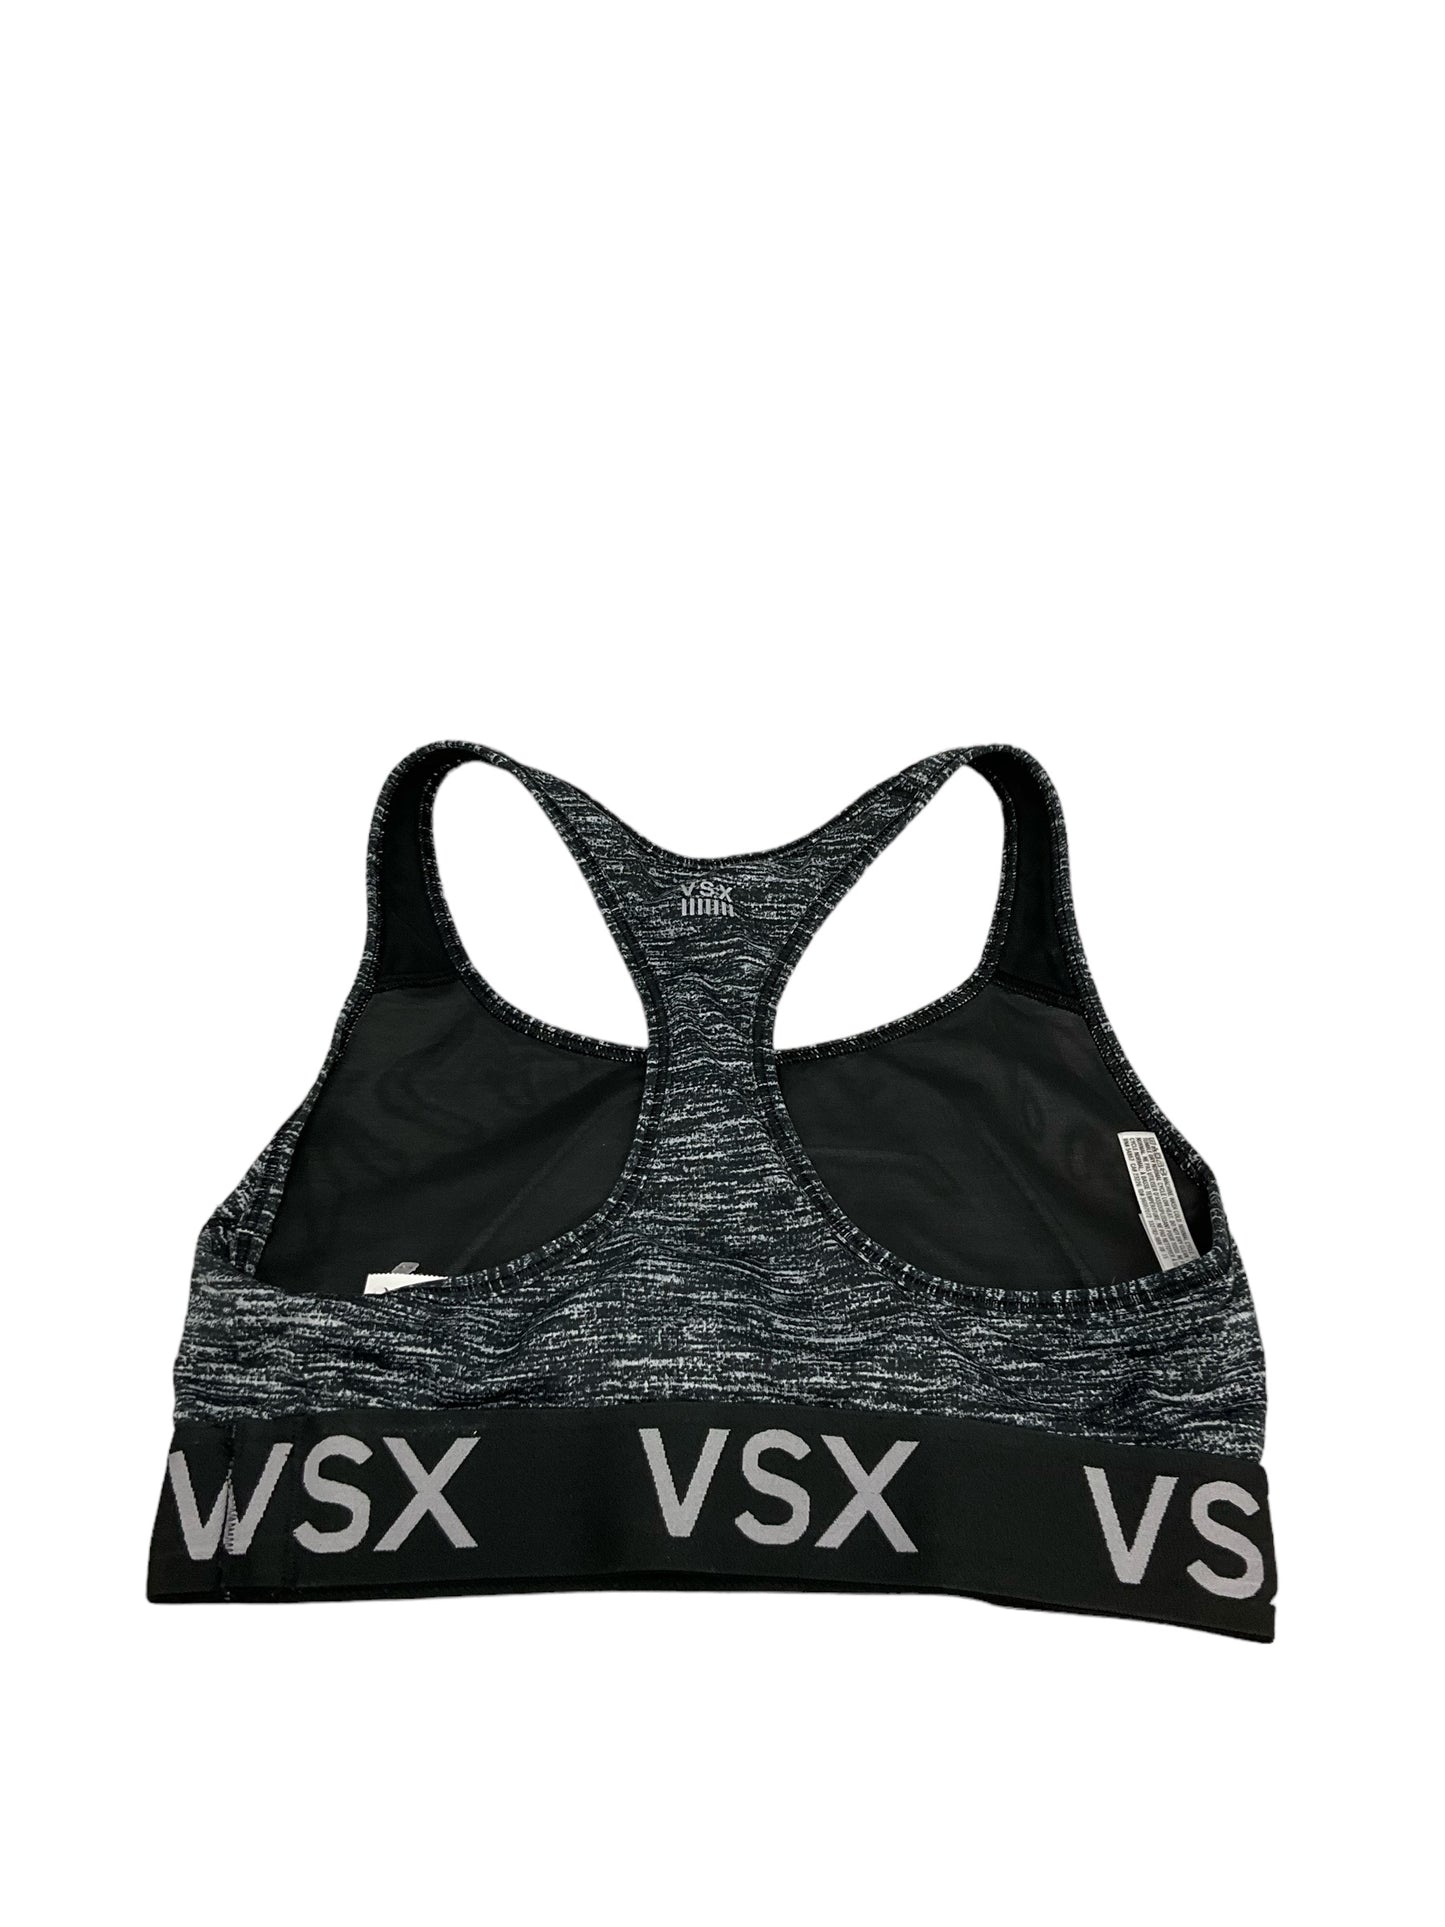 Athletic Bra By Victorias Secret  Size: S